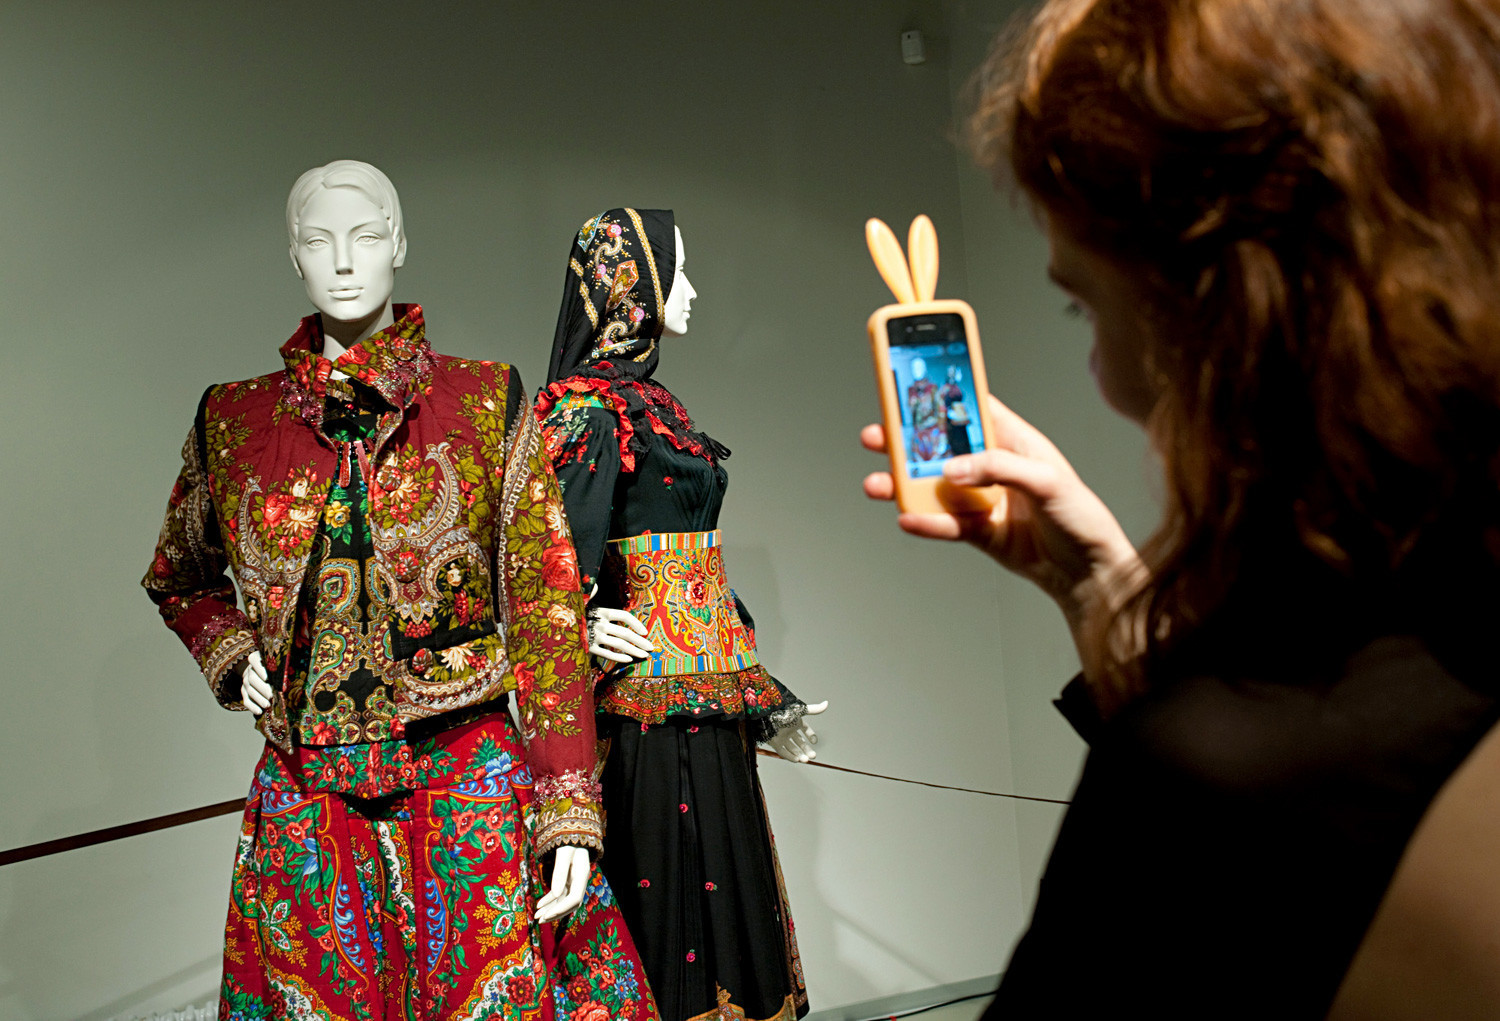 Exposição “Meio século de moda”, de Zaitsev, realizada no Museu de Arte Contemporânea Erarta, em São Petersburgo